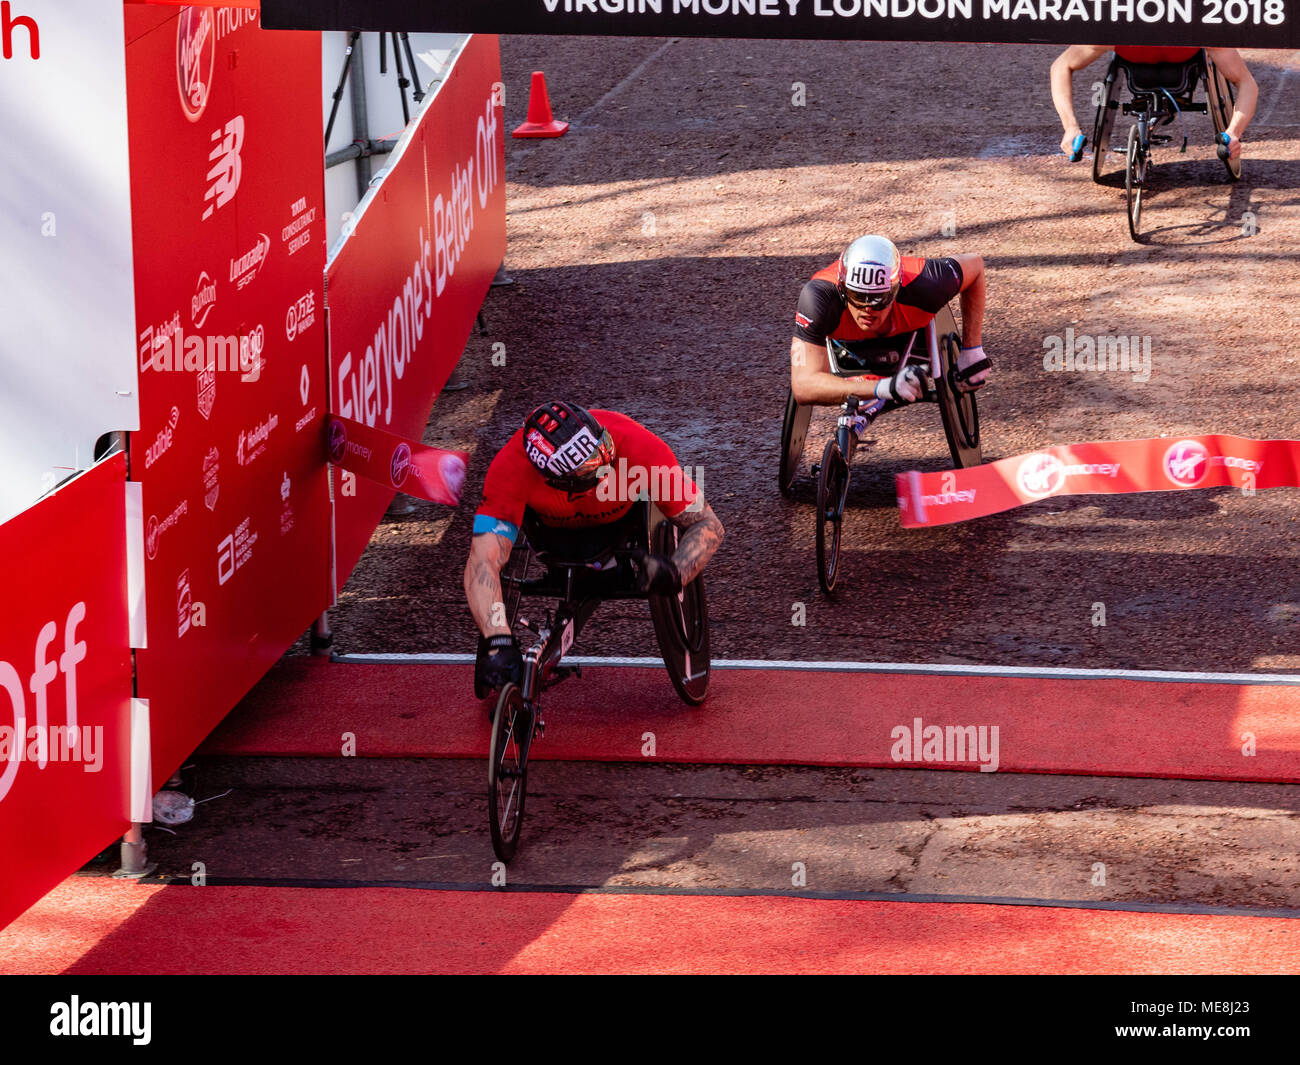 Londra, UK, 22 aprile 2018 LONDRA, REGNO UNITO, Maratona 2018 David Weir vince uomini della sedia a rotelle gara alla maratona di Londra è molto stretta eseguire calore. Credito: Ian Davidson/Alamy Live News Foto Stock